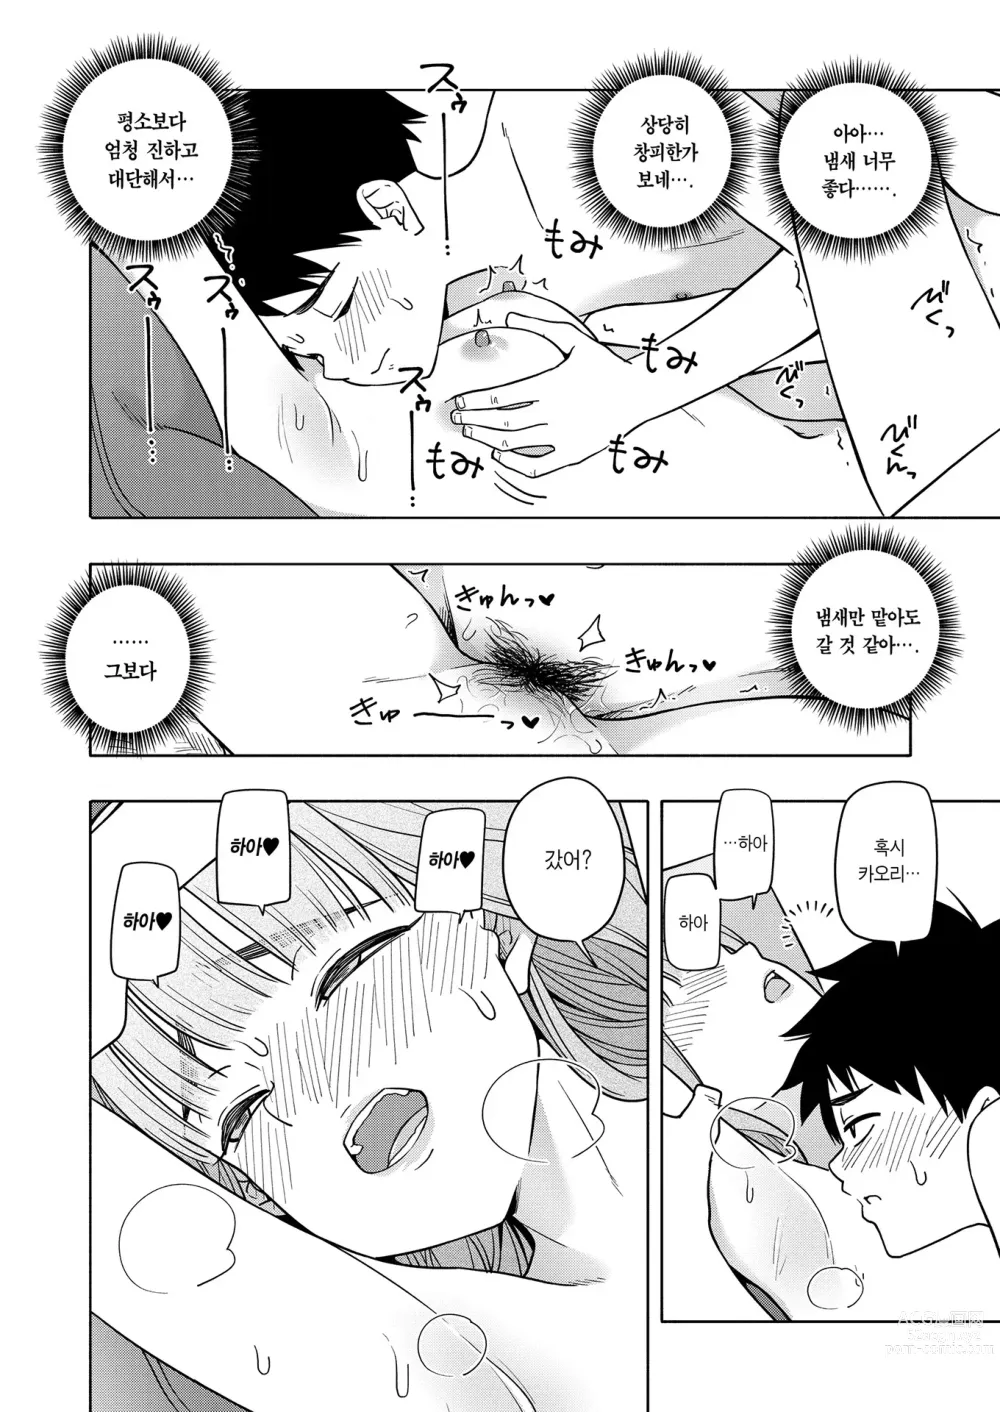 Page 22 of manga Kaori Kaoru (decensored)